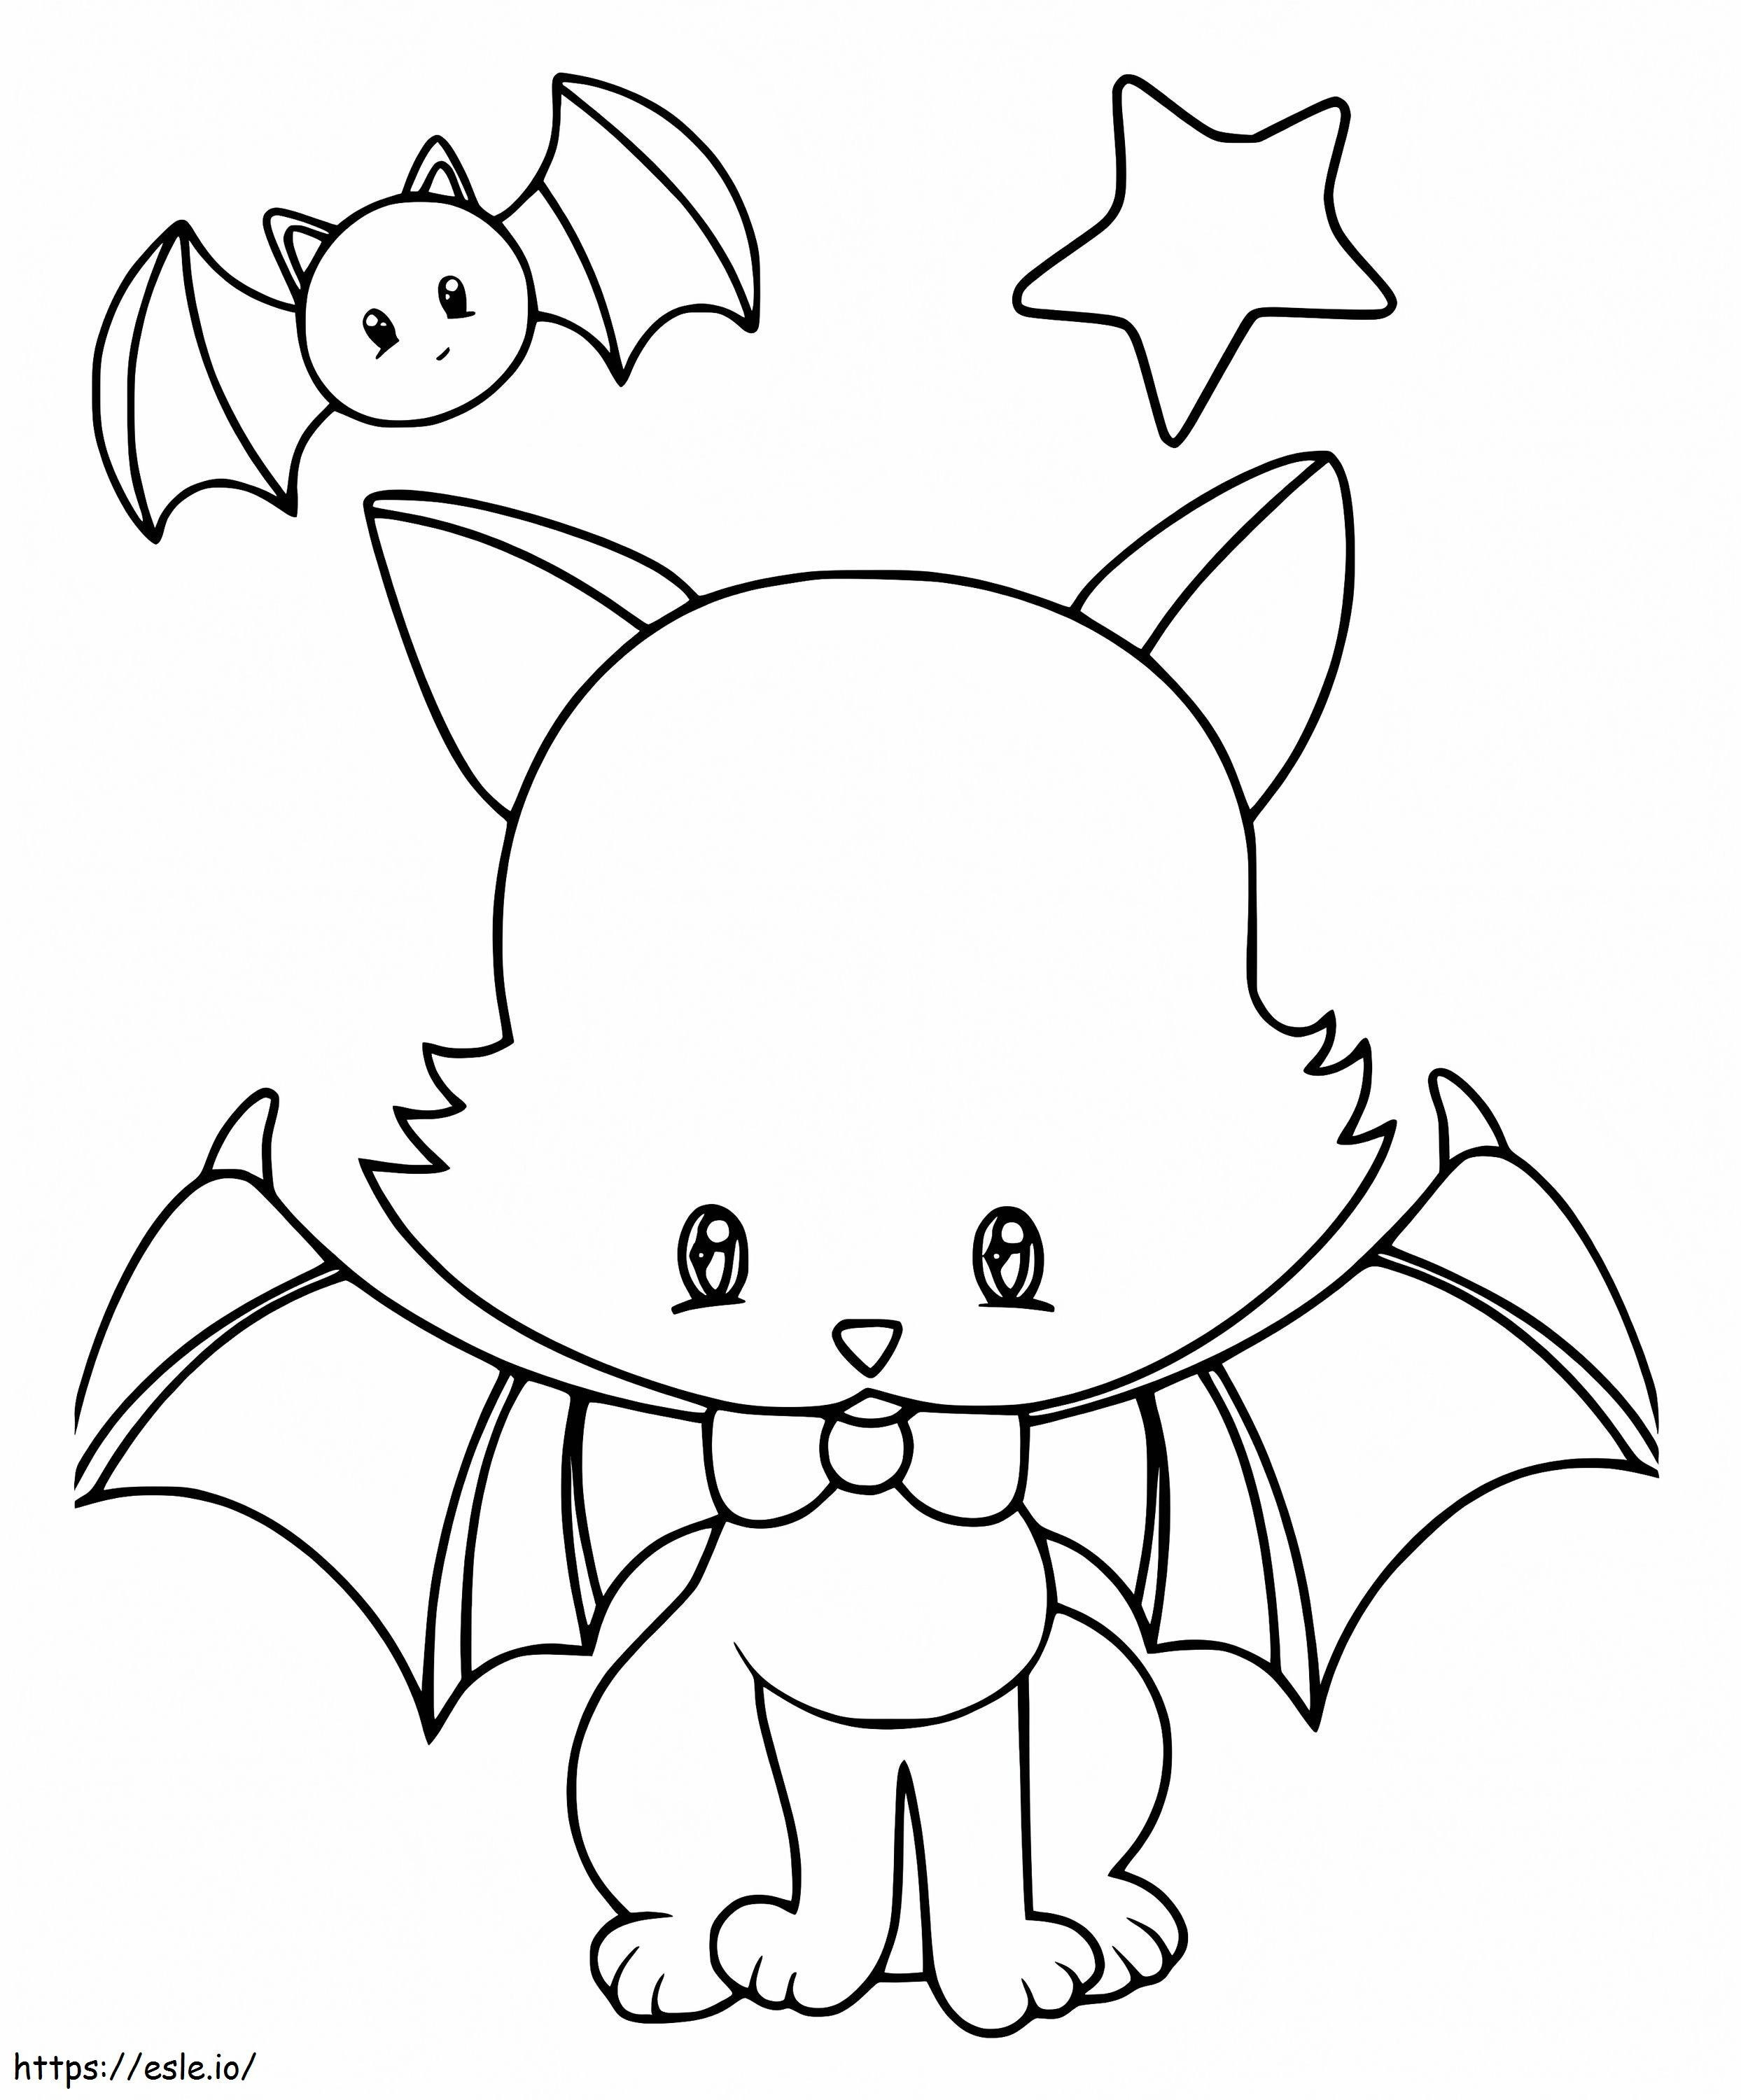 Gatto pipistrello di Halloween da colorare